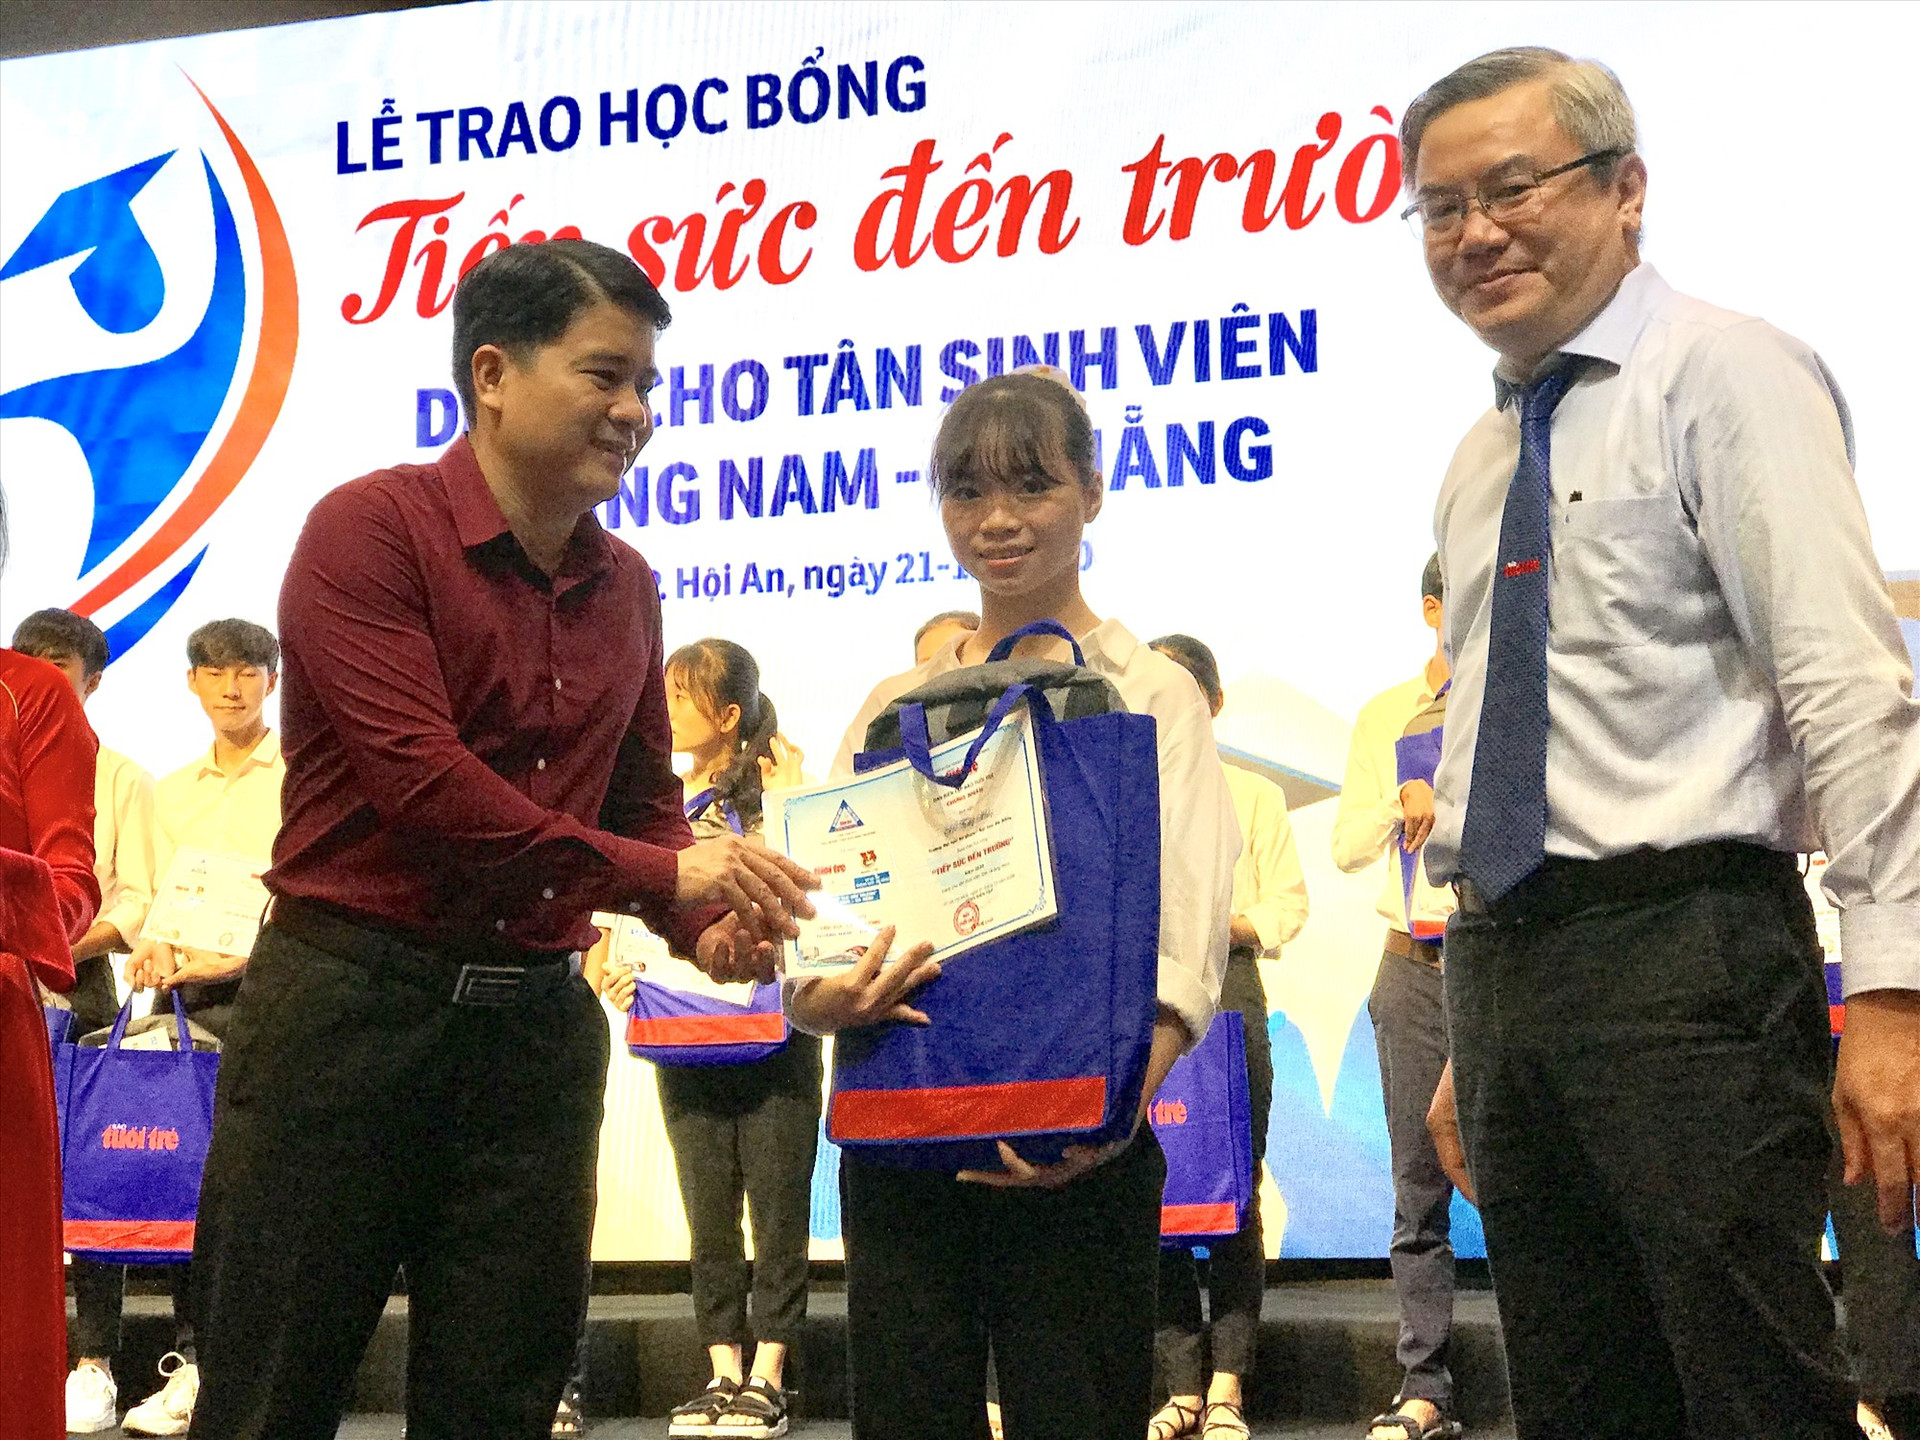 Phó Chủ tịch UBND tỉnh Trần Văn Tân đại diện ban tổ chức trao học bổng cho tân sinh viên. Ảnh: Q.T